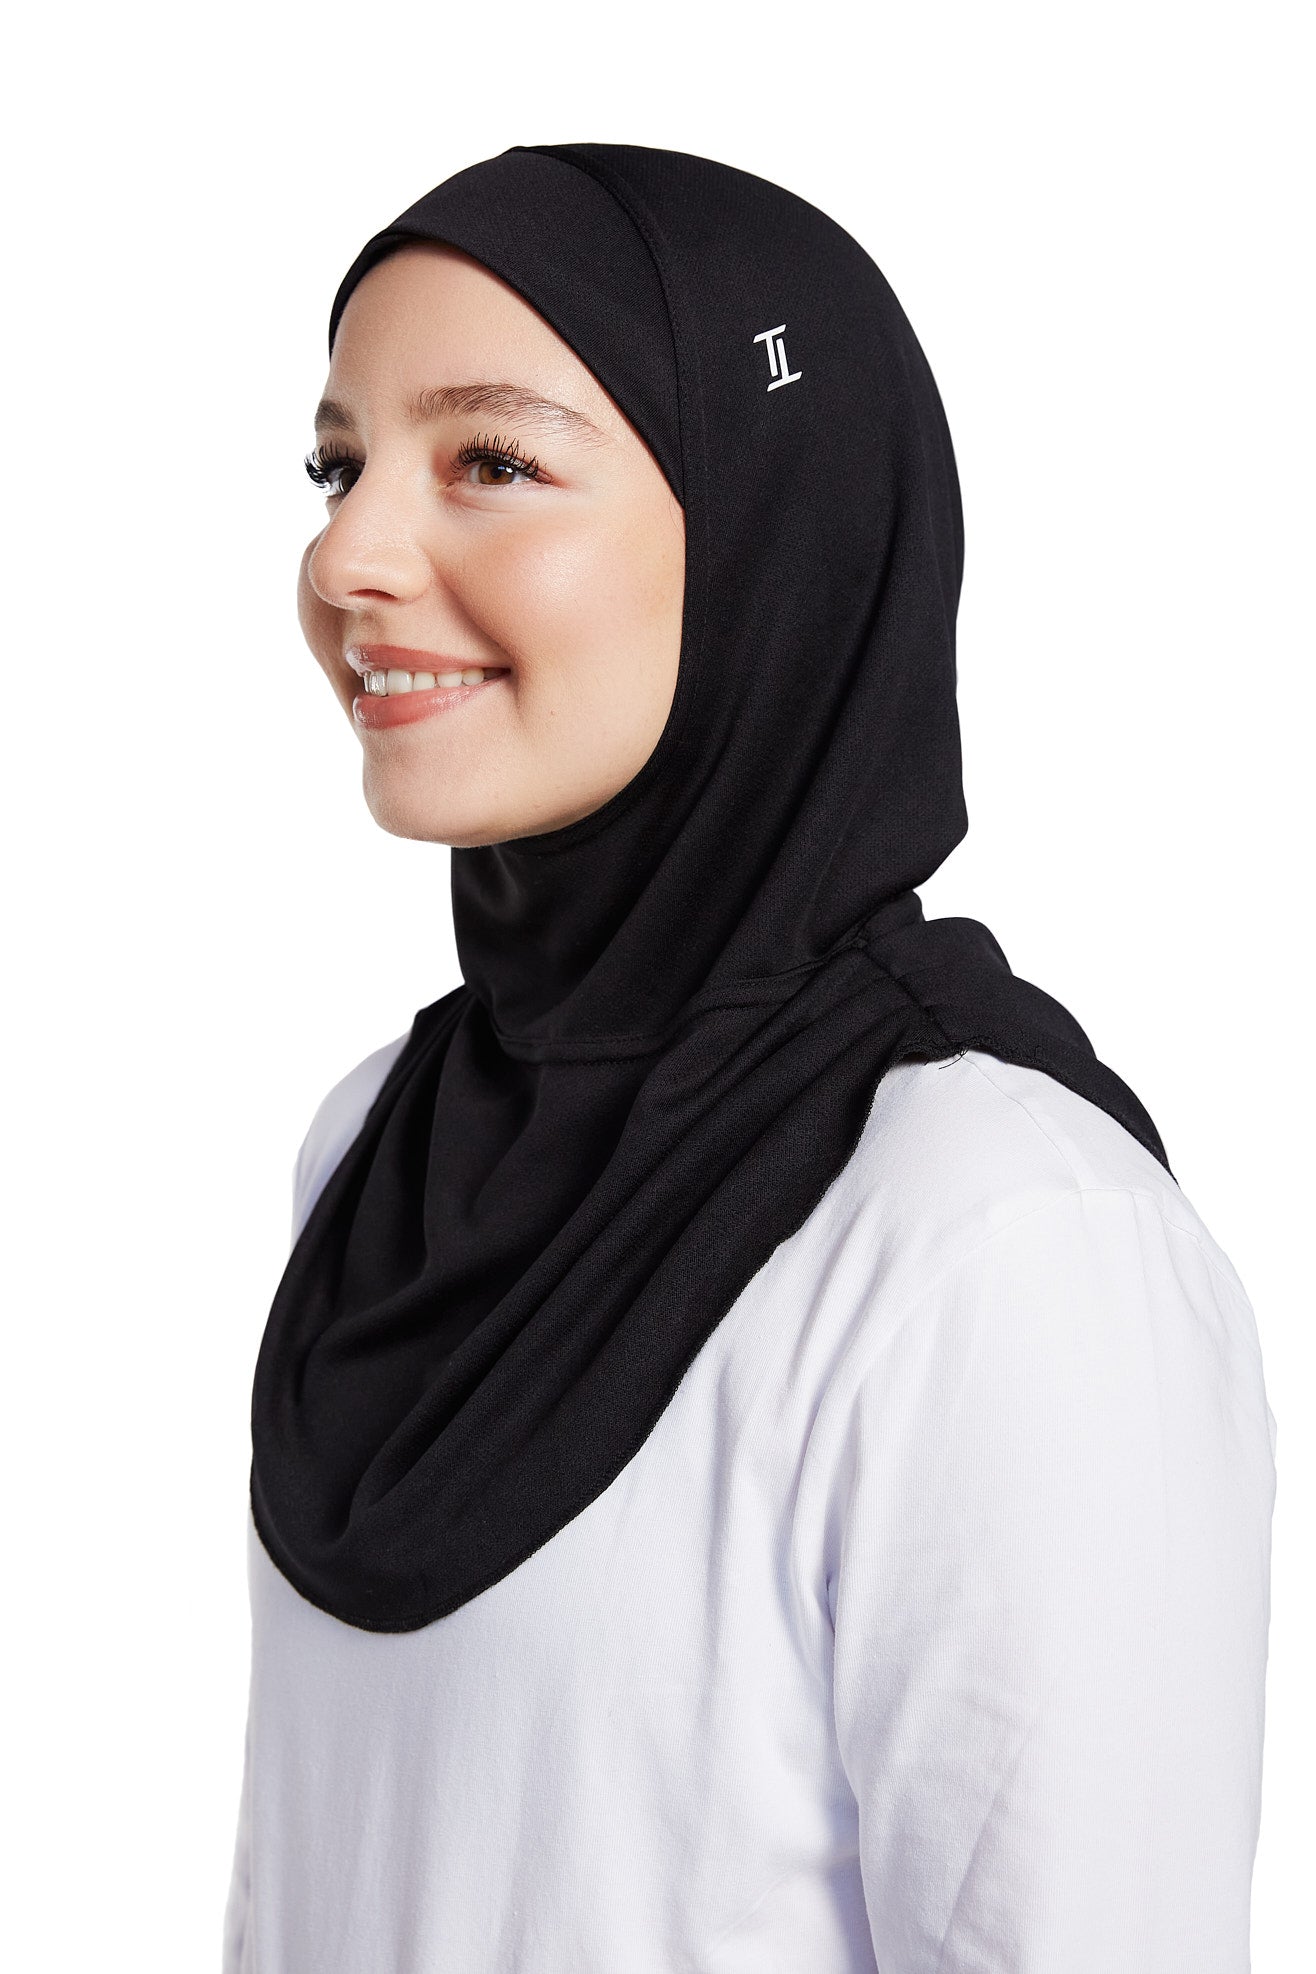 Gamechanger Hijab